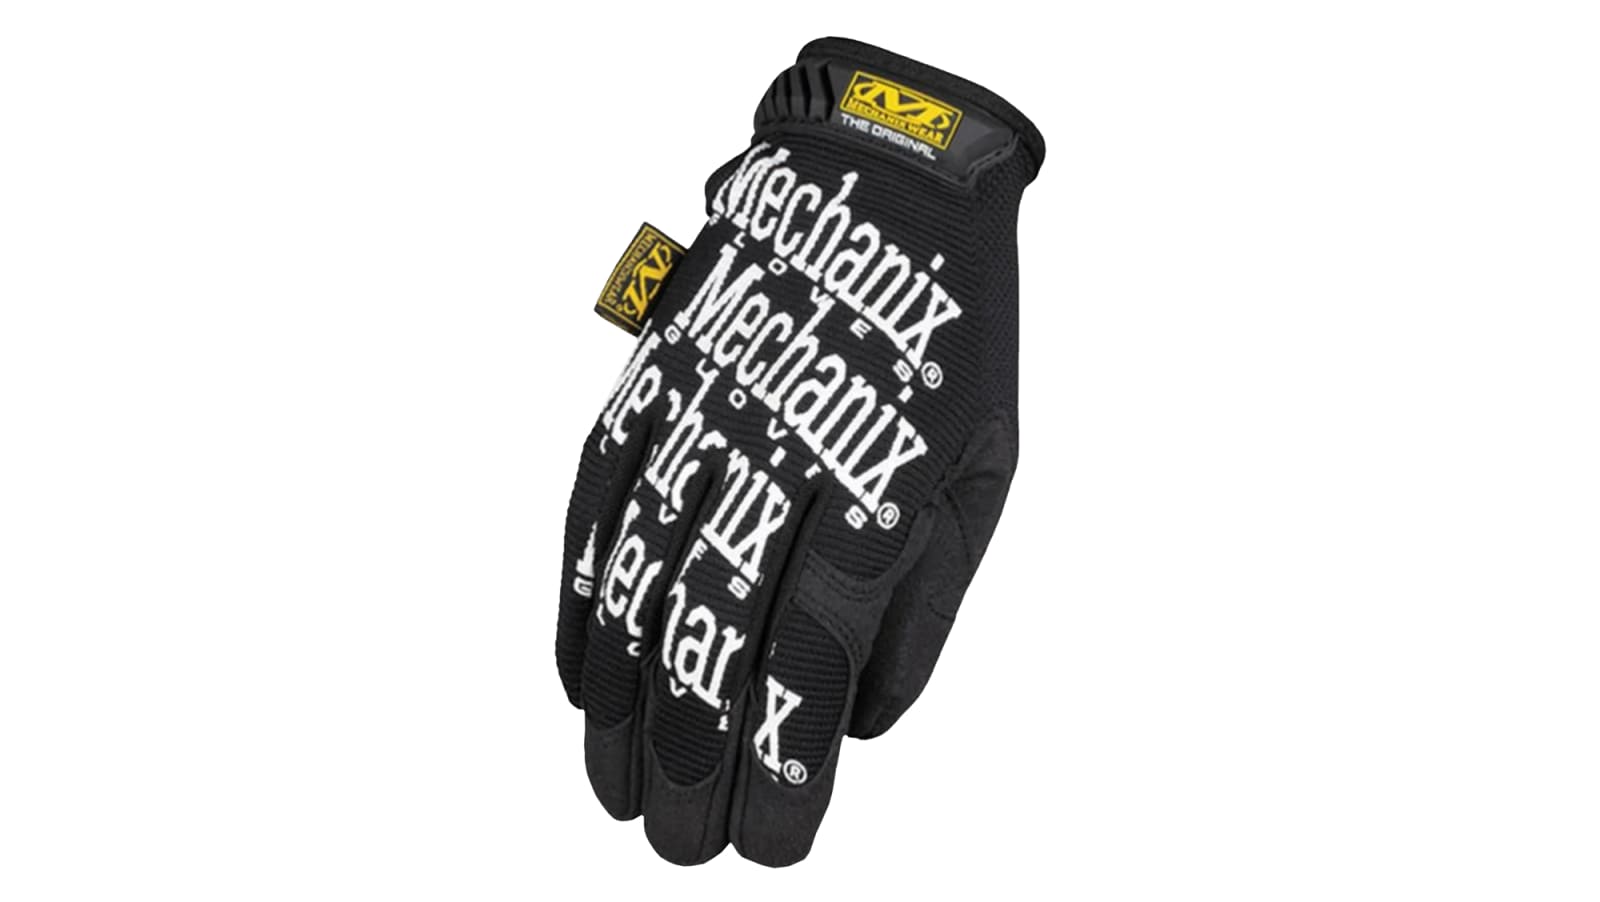 Mechanix Wear Gloves - The Original 